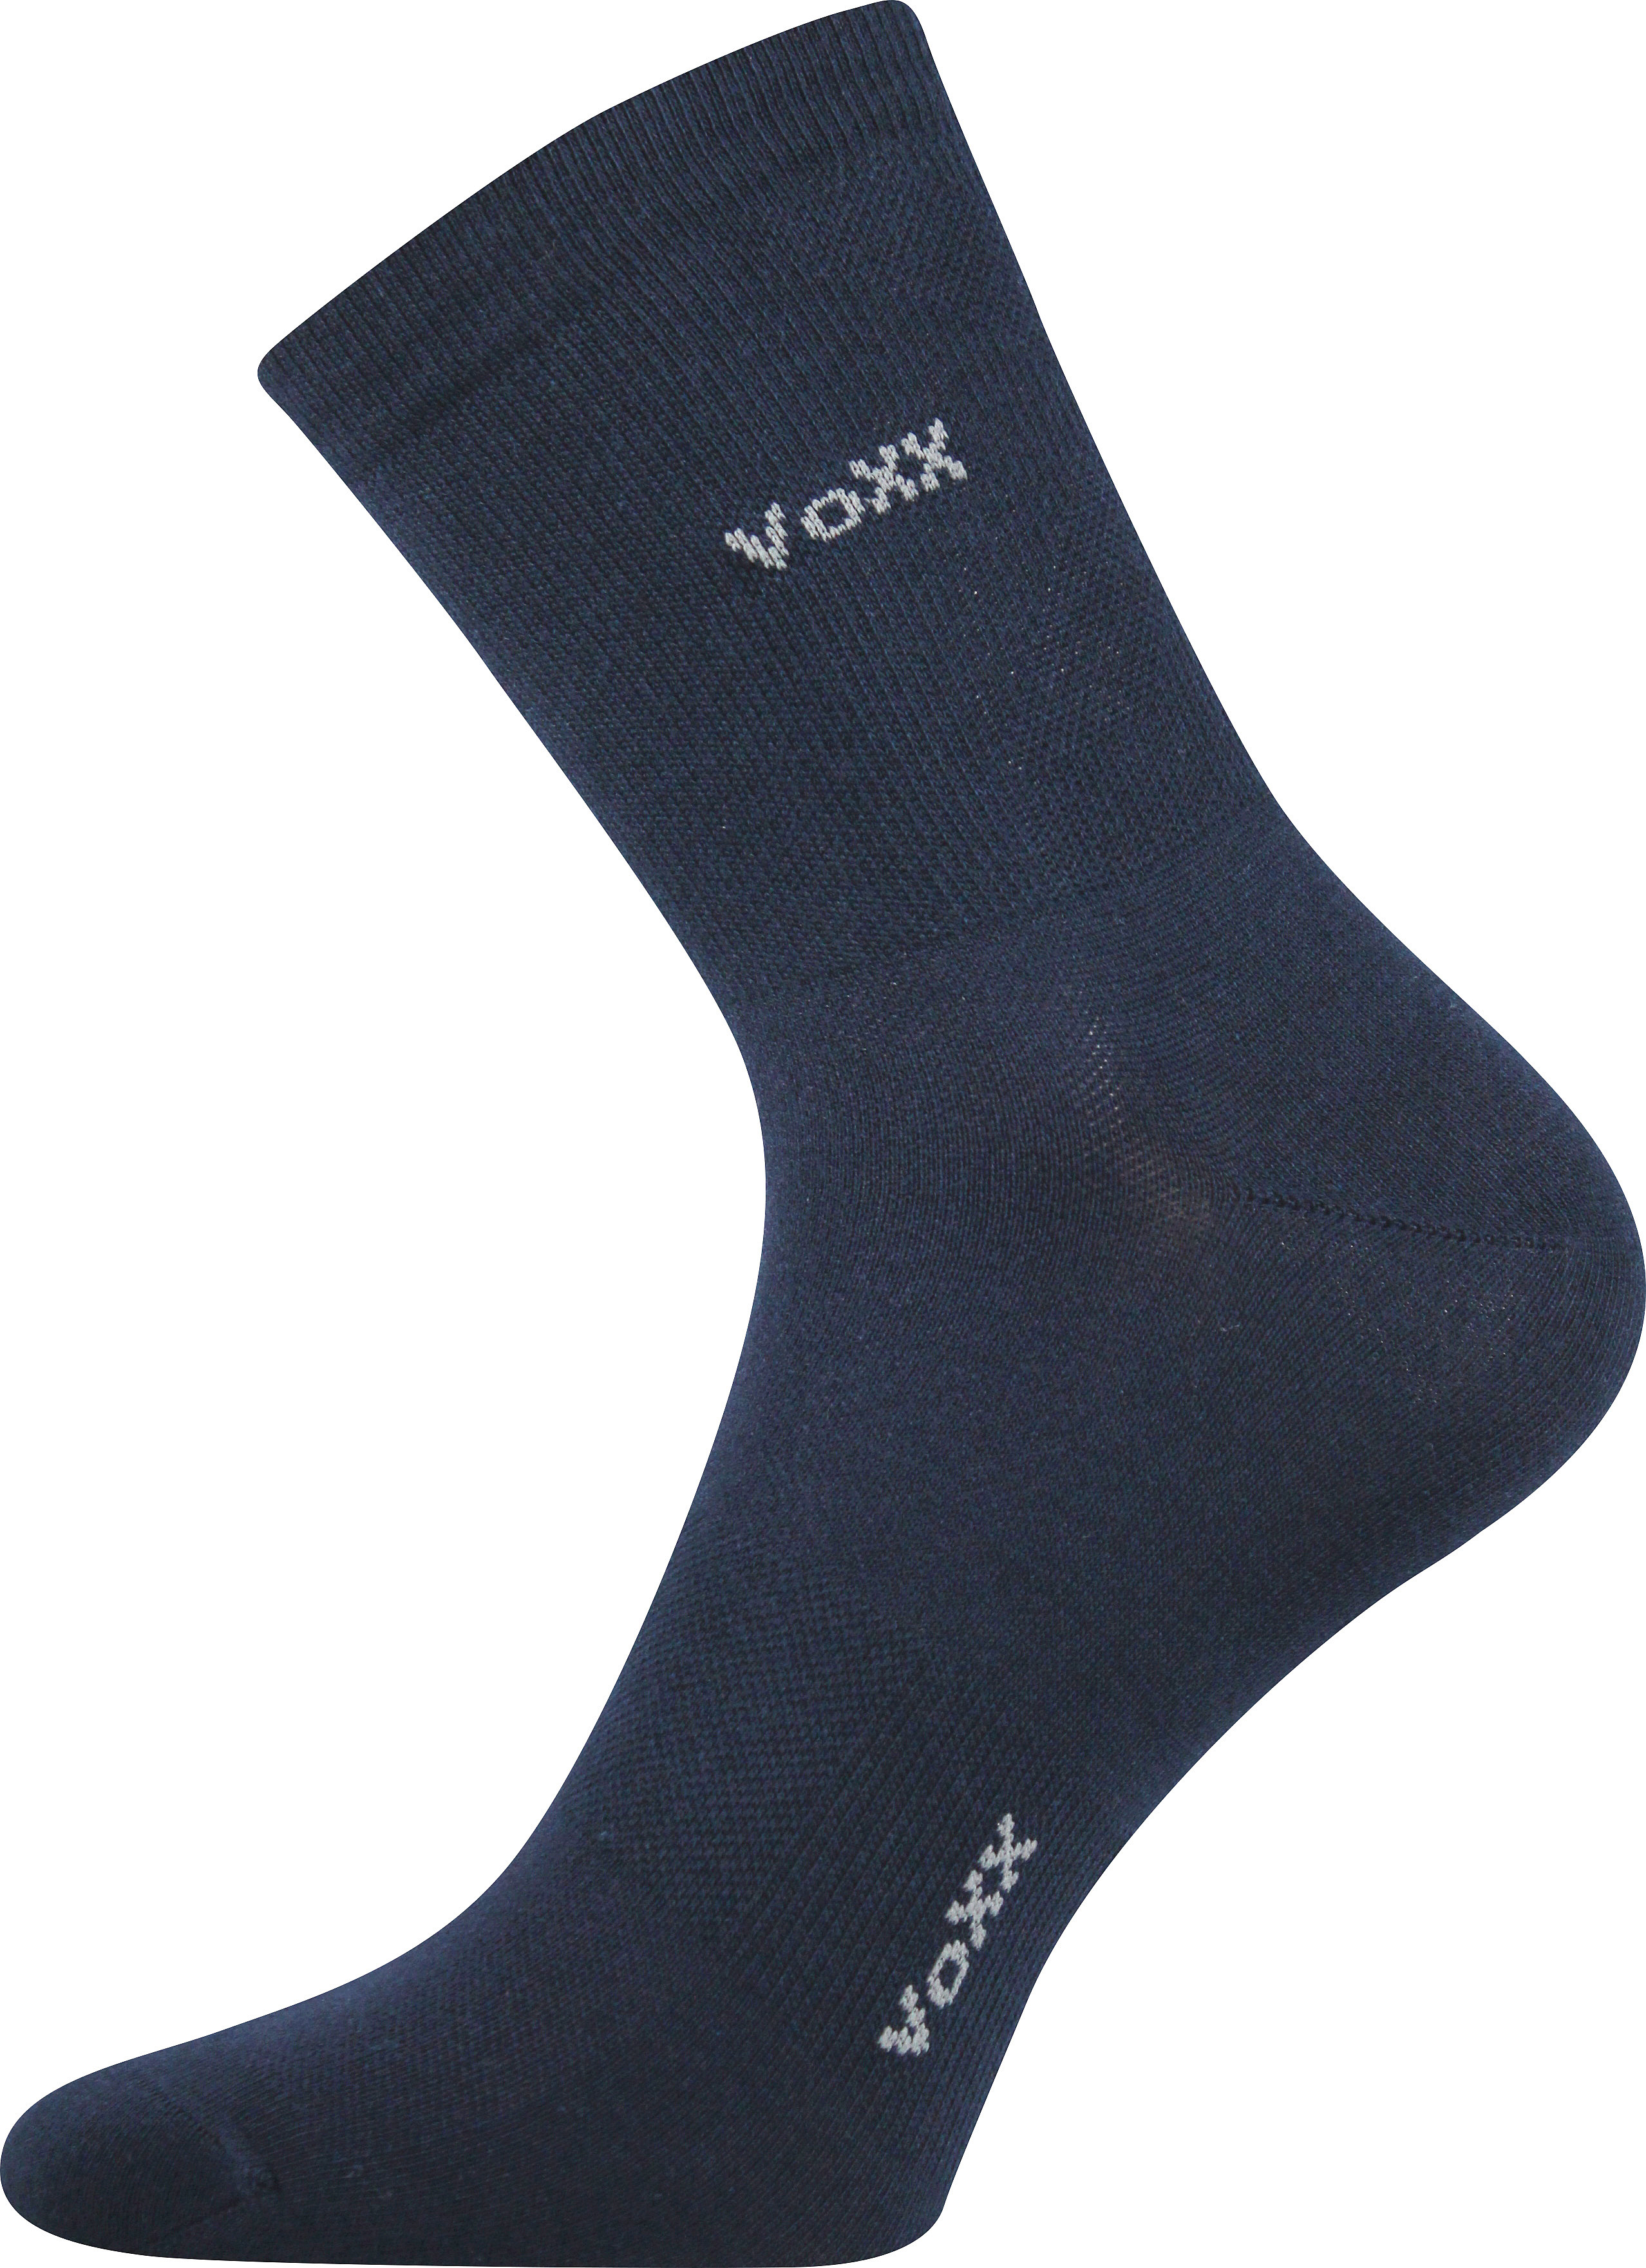 Ponožky sportovní Voxx Horizon - navy, 39-42